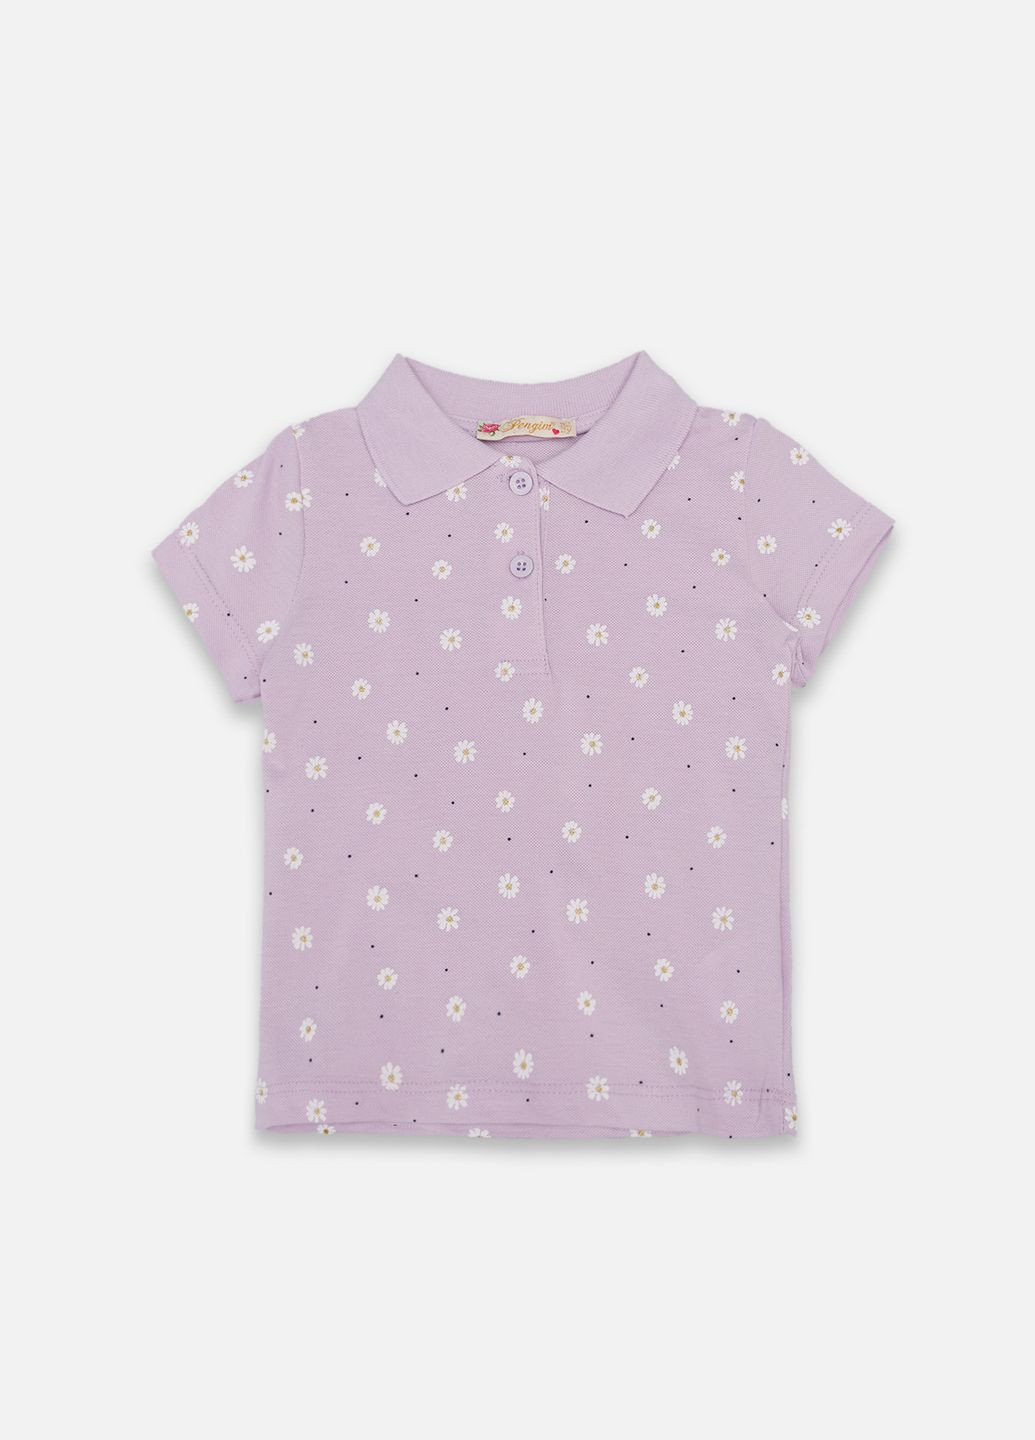 Сиреневая детская футболка-футболка-поло с коротким рукавом для девочки цвет сиреневый цб-00247469 для девочки Pengim